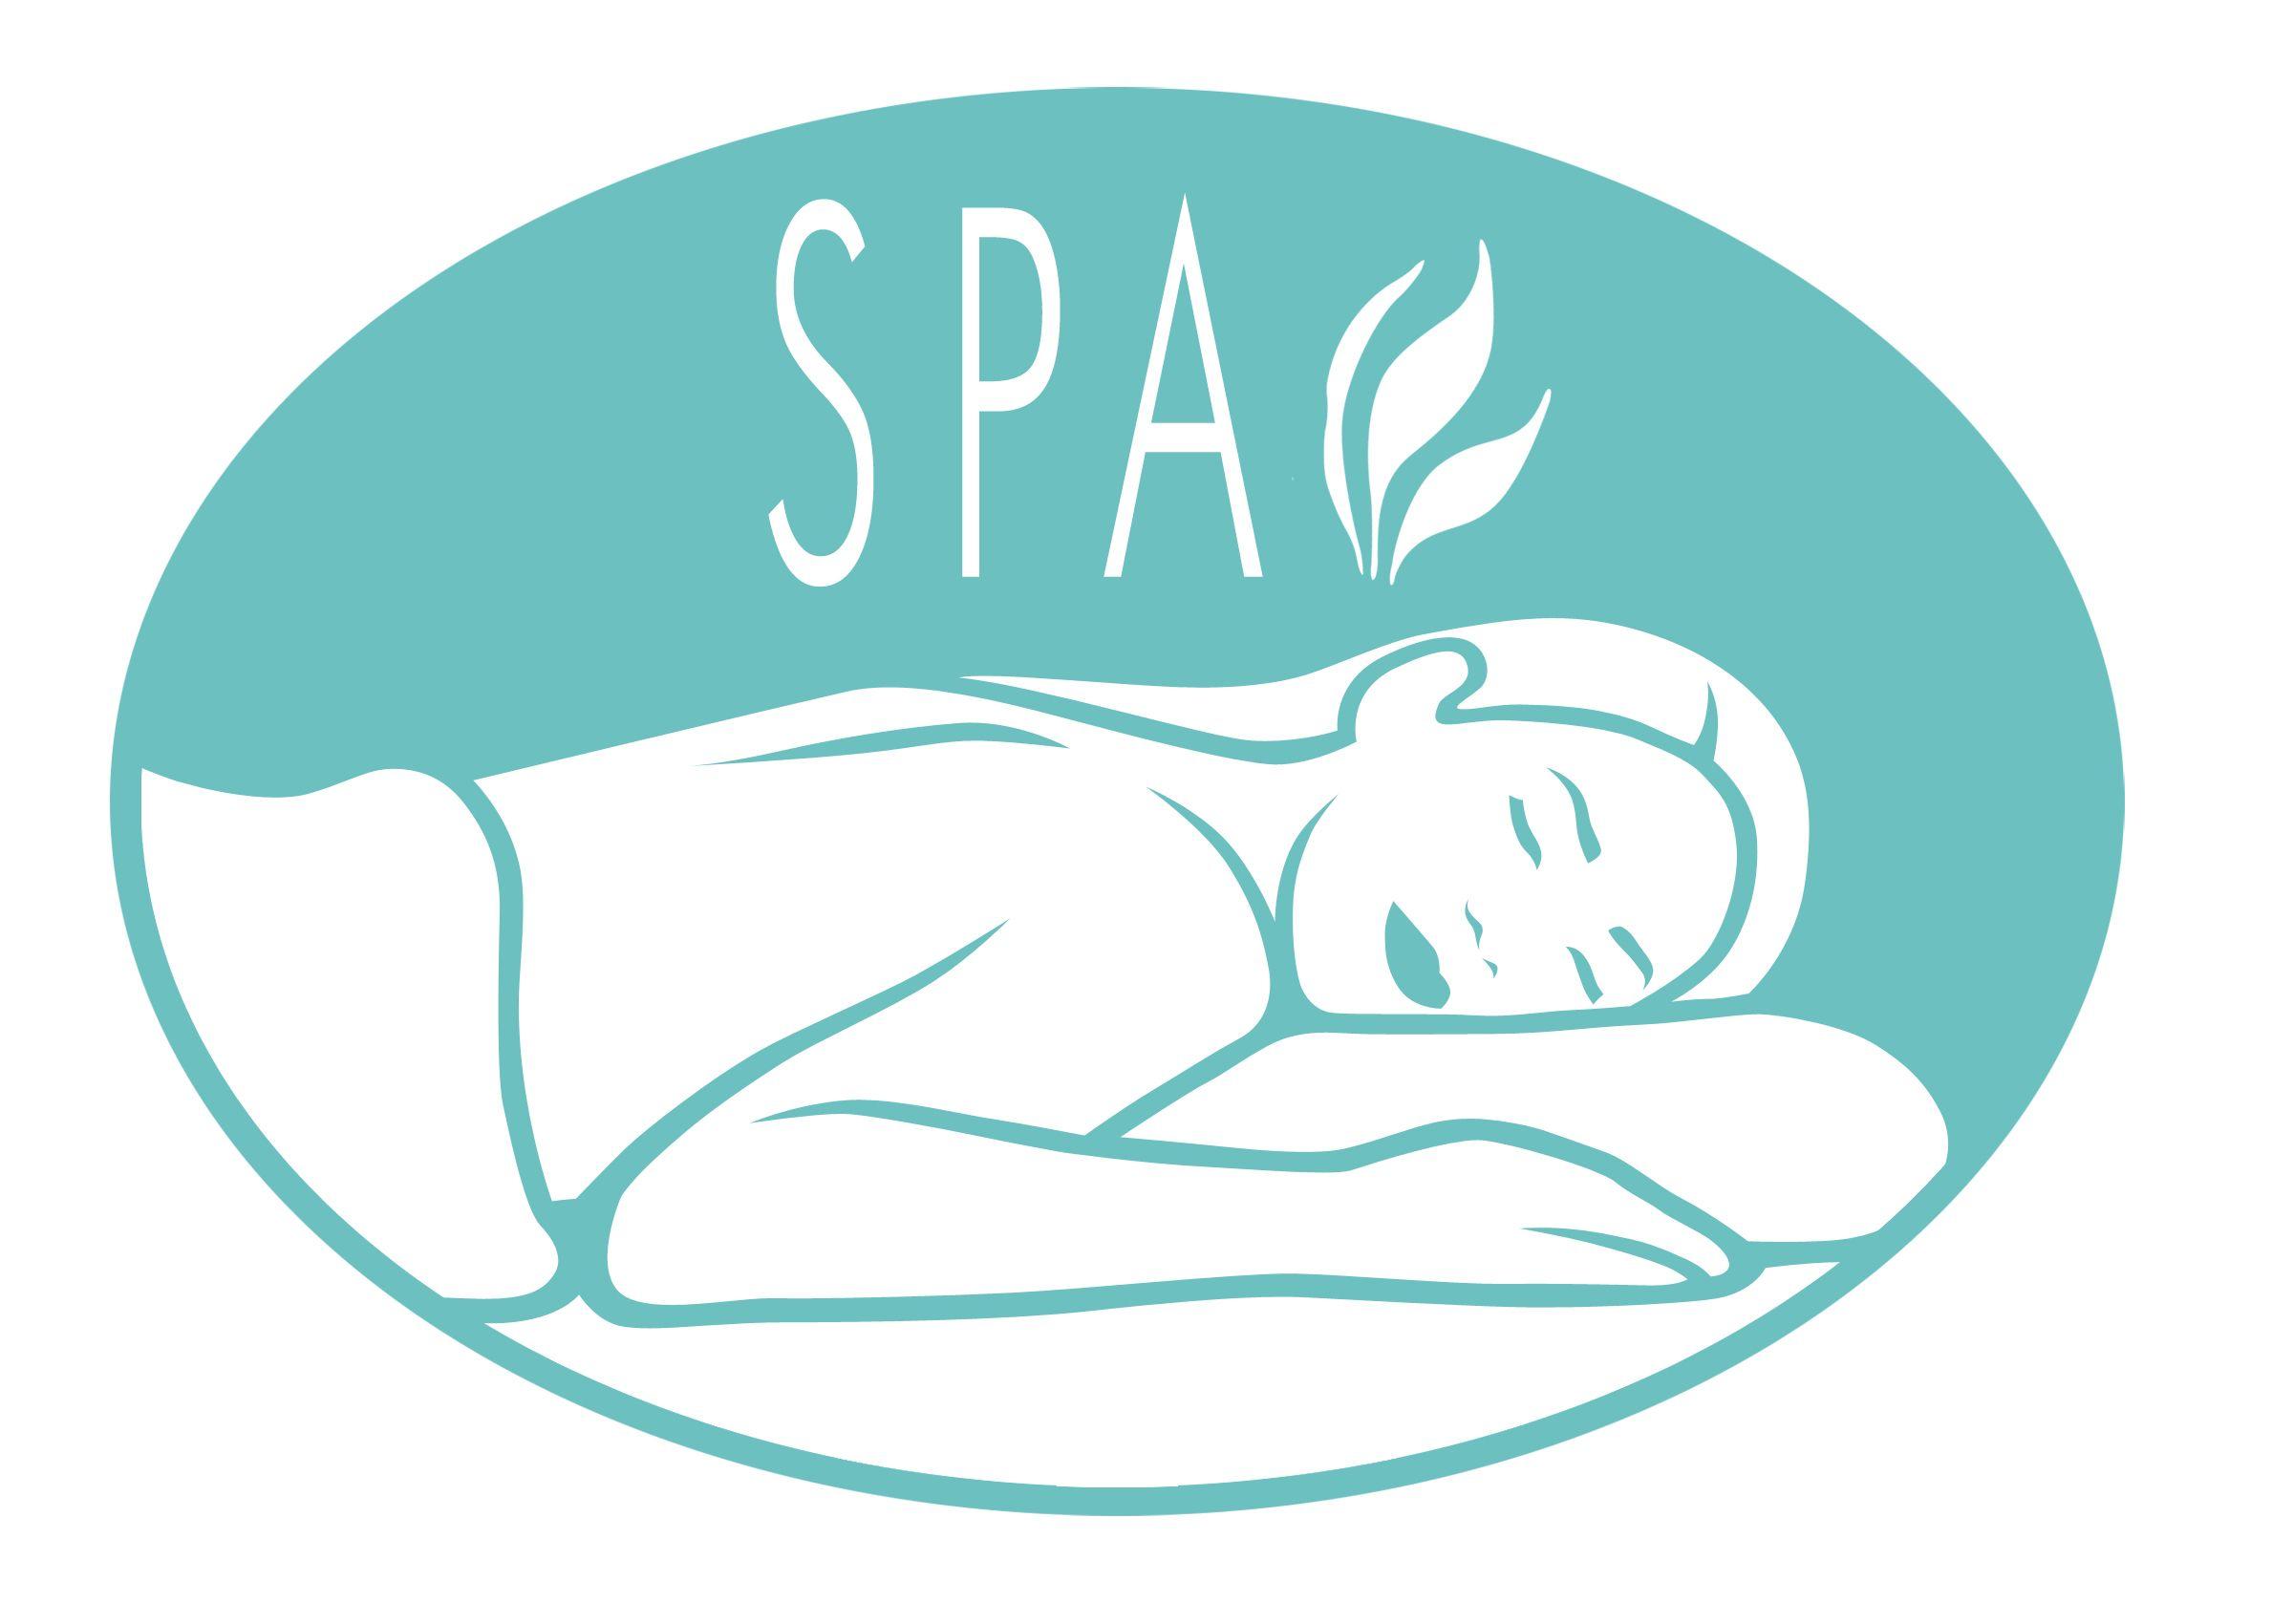 Spa Logo - Creating a Calming Spa Logo With Positive Energy • Online Logo